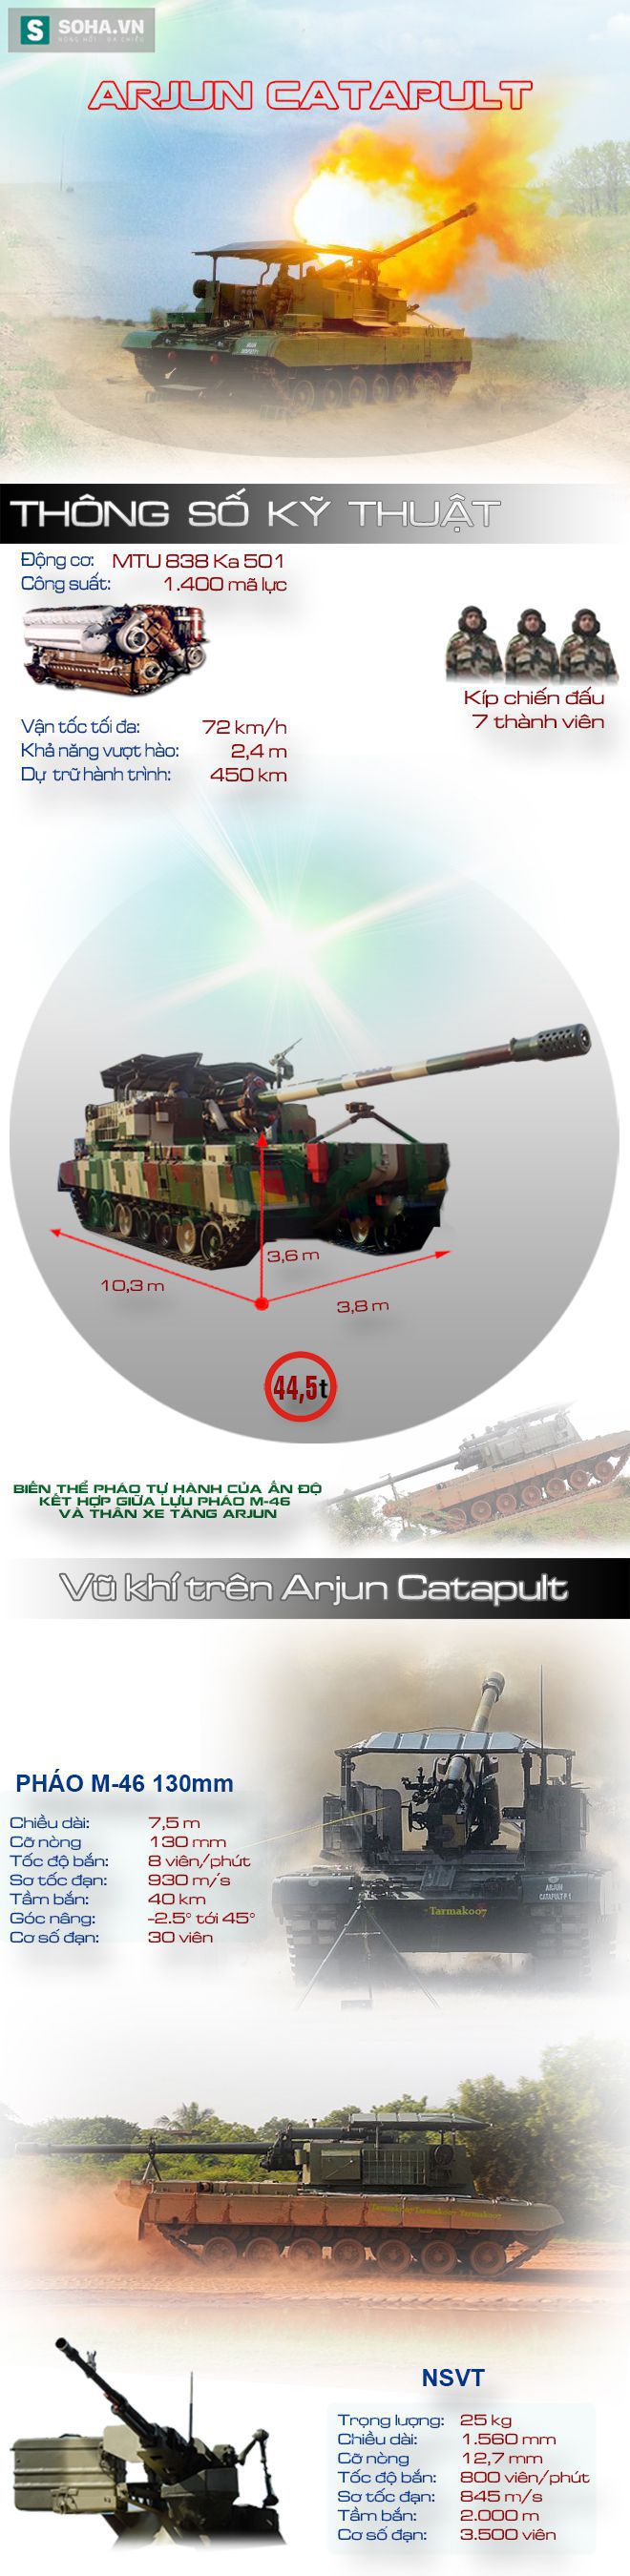 Arjun Catapult - Hệ thống pháo tự hành kết hợp siêu độc đáo của Ấn Độ - Ảnh 1.